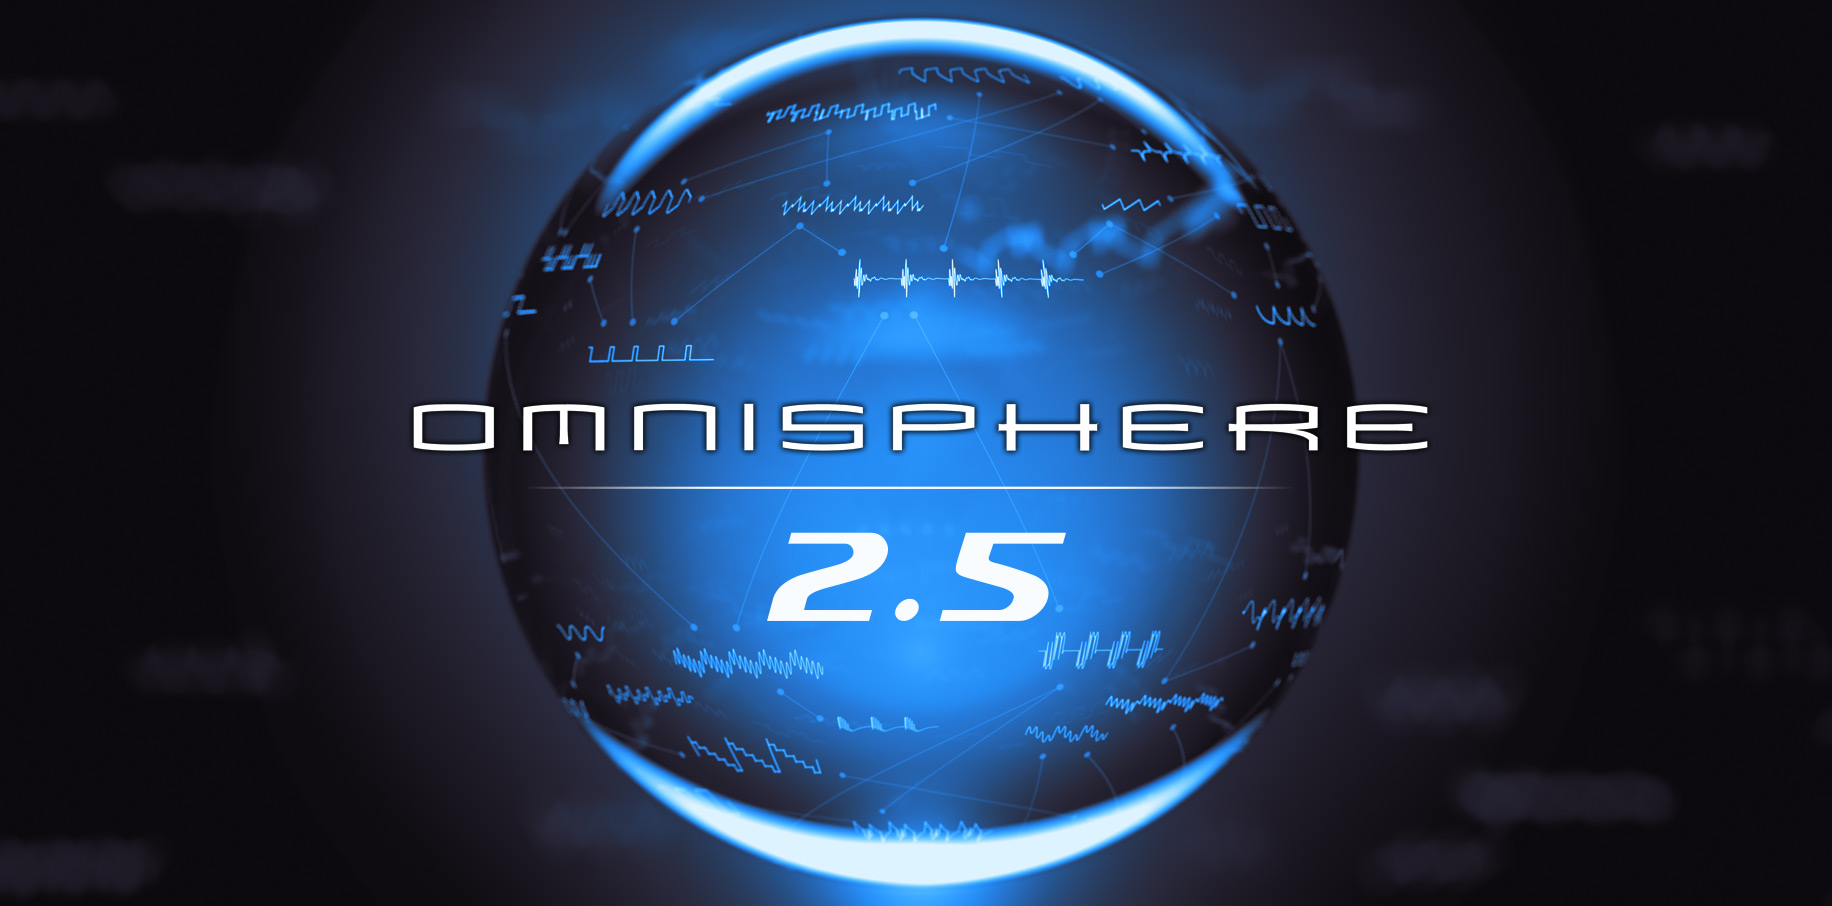 omnisphere 2 mac crack google drive